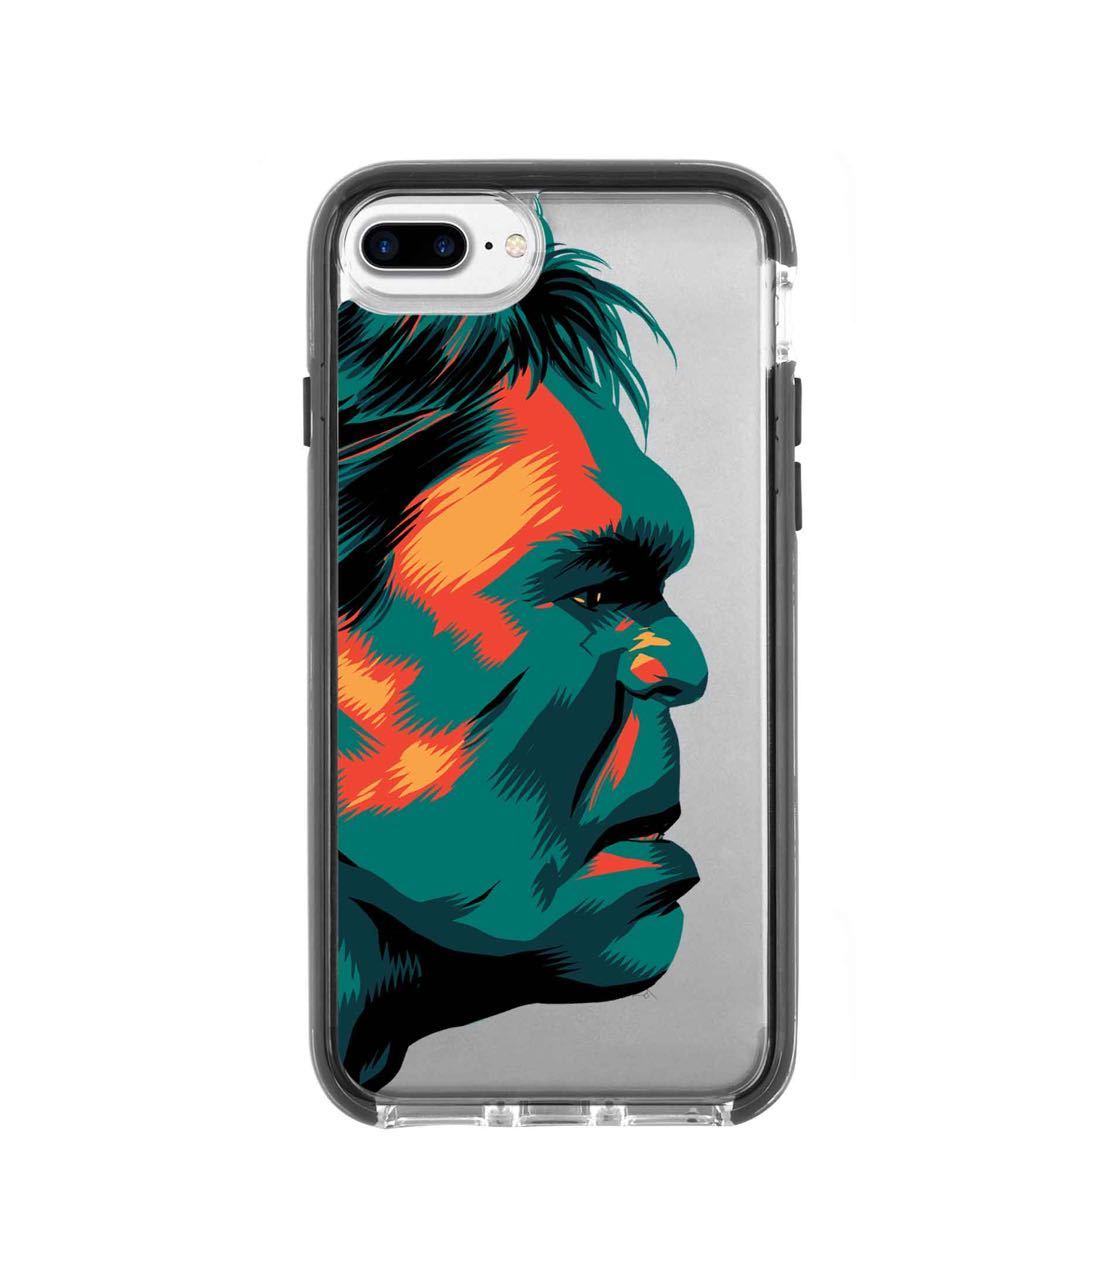 Illuminated Hulk - Extreme Phone Case for iPhone 7 Plus